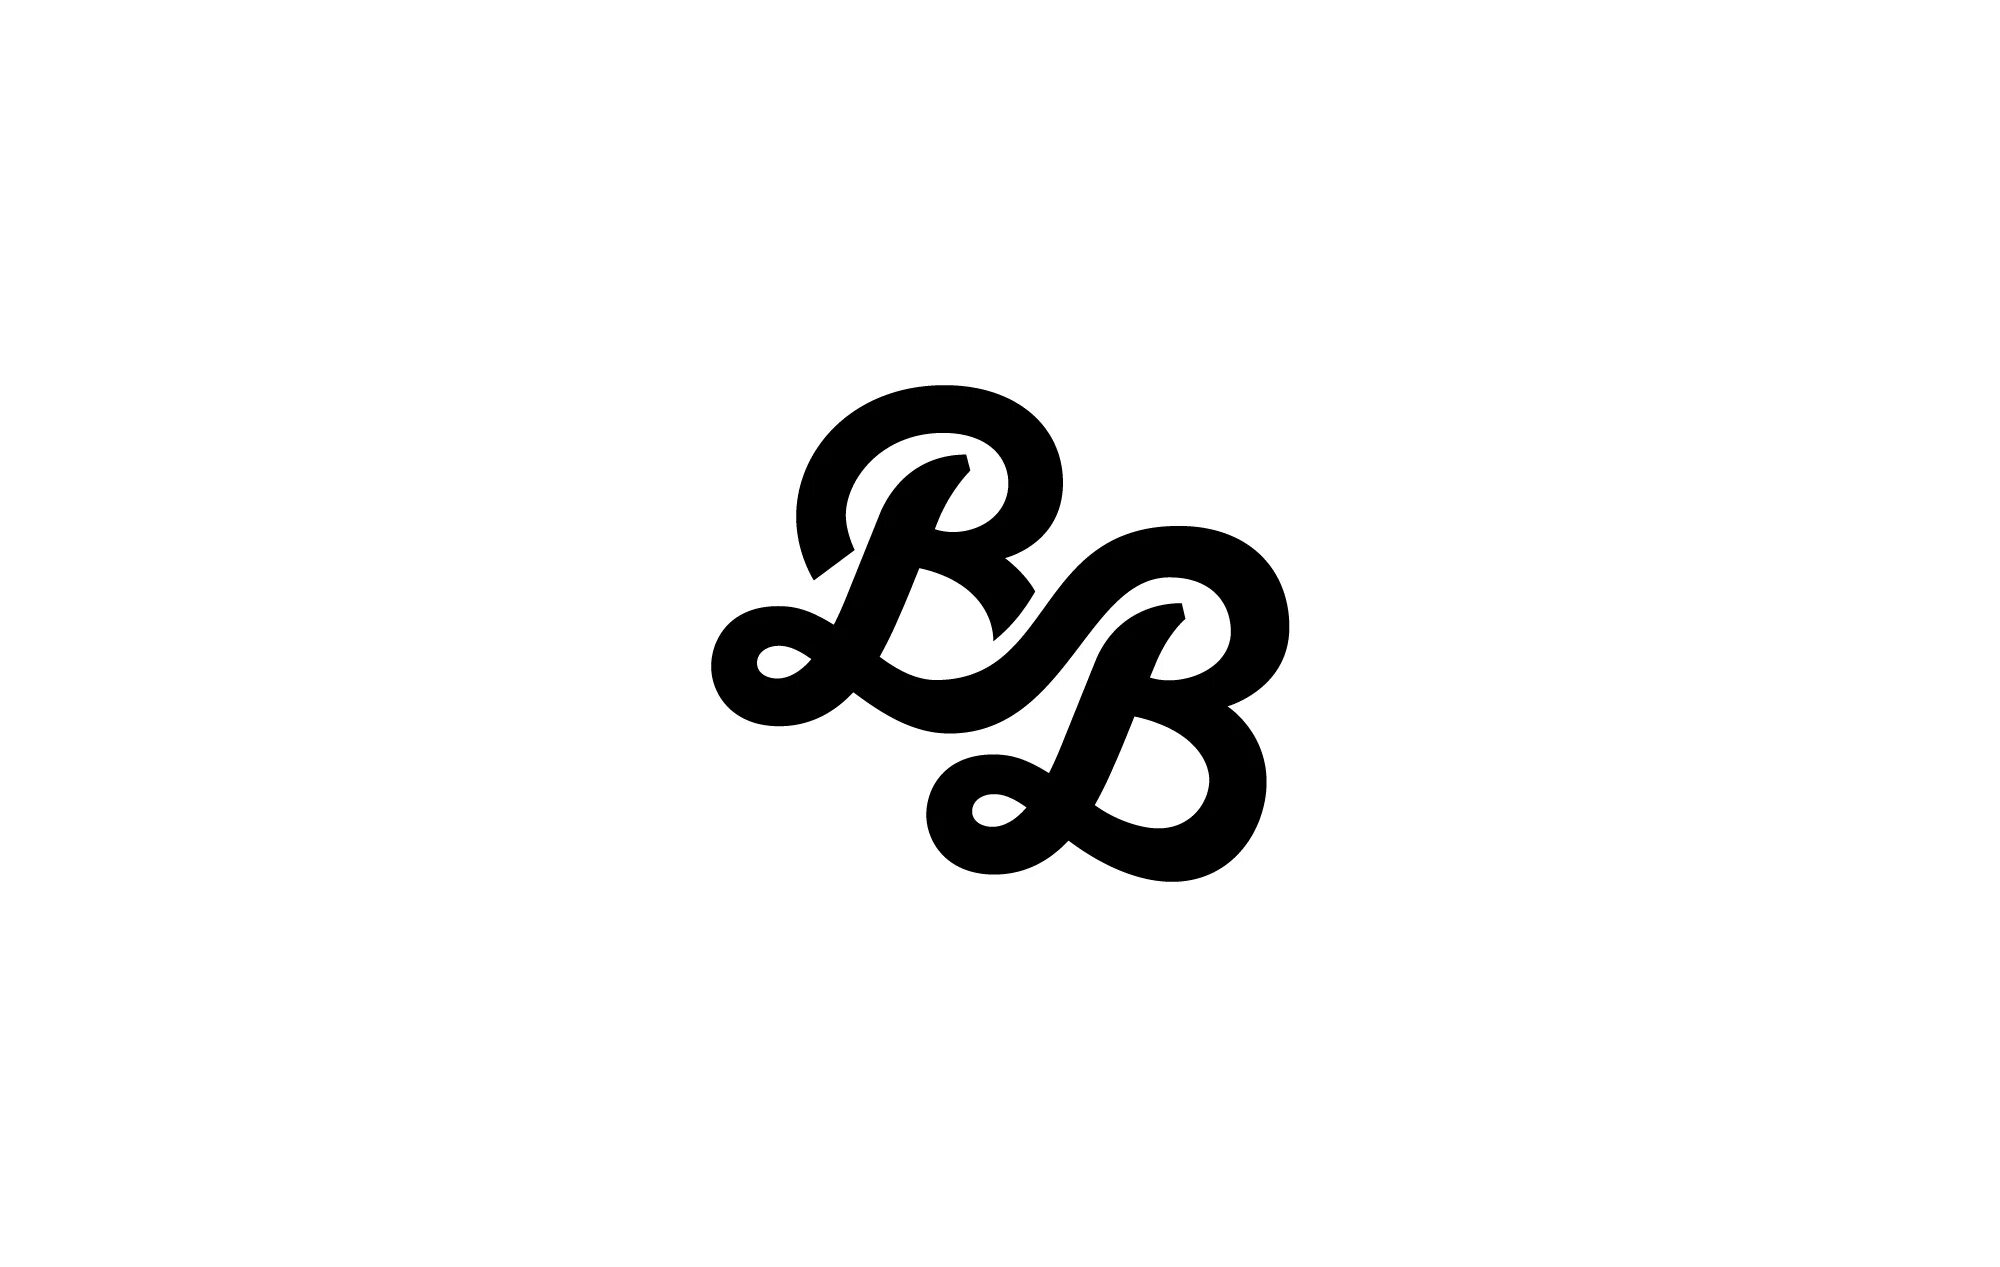 Логотип ВВ. Логотип с буквами ВВ. BB логотип бренда. Две буквы ВВ. Ч б бб б б б